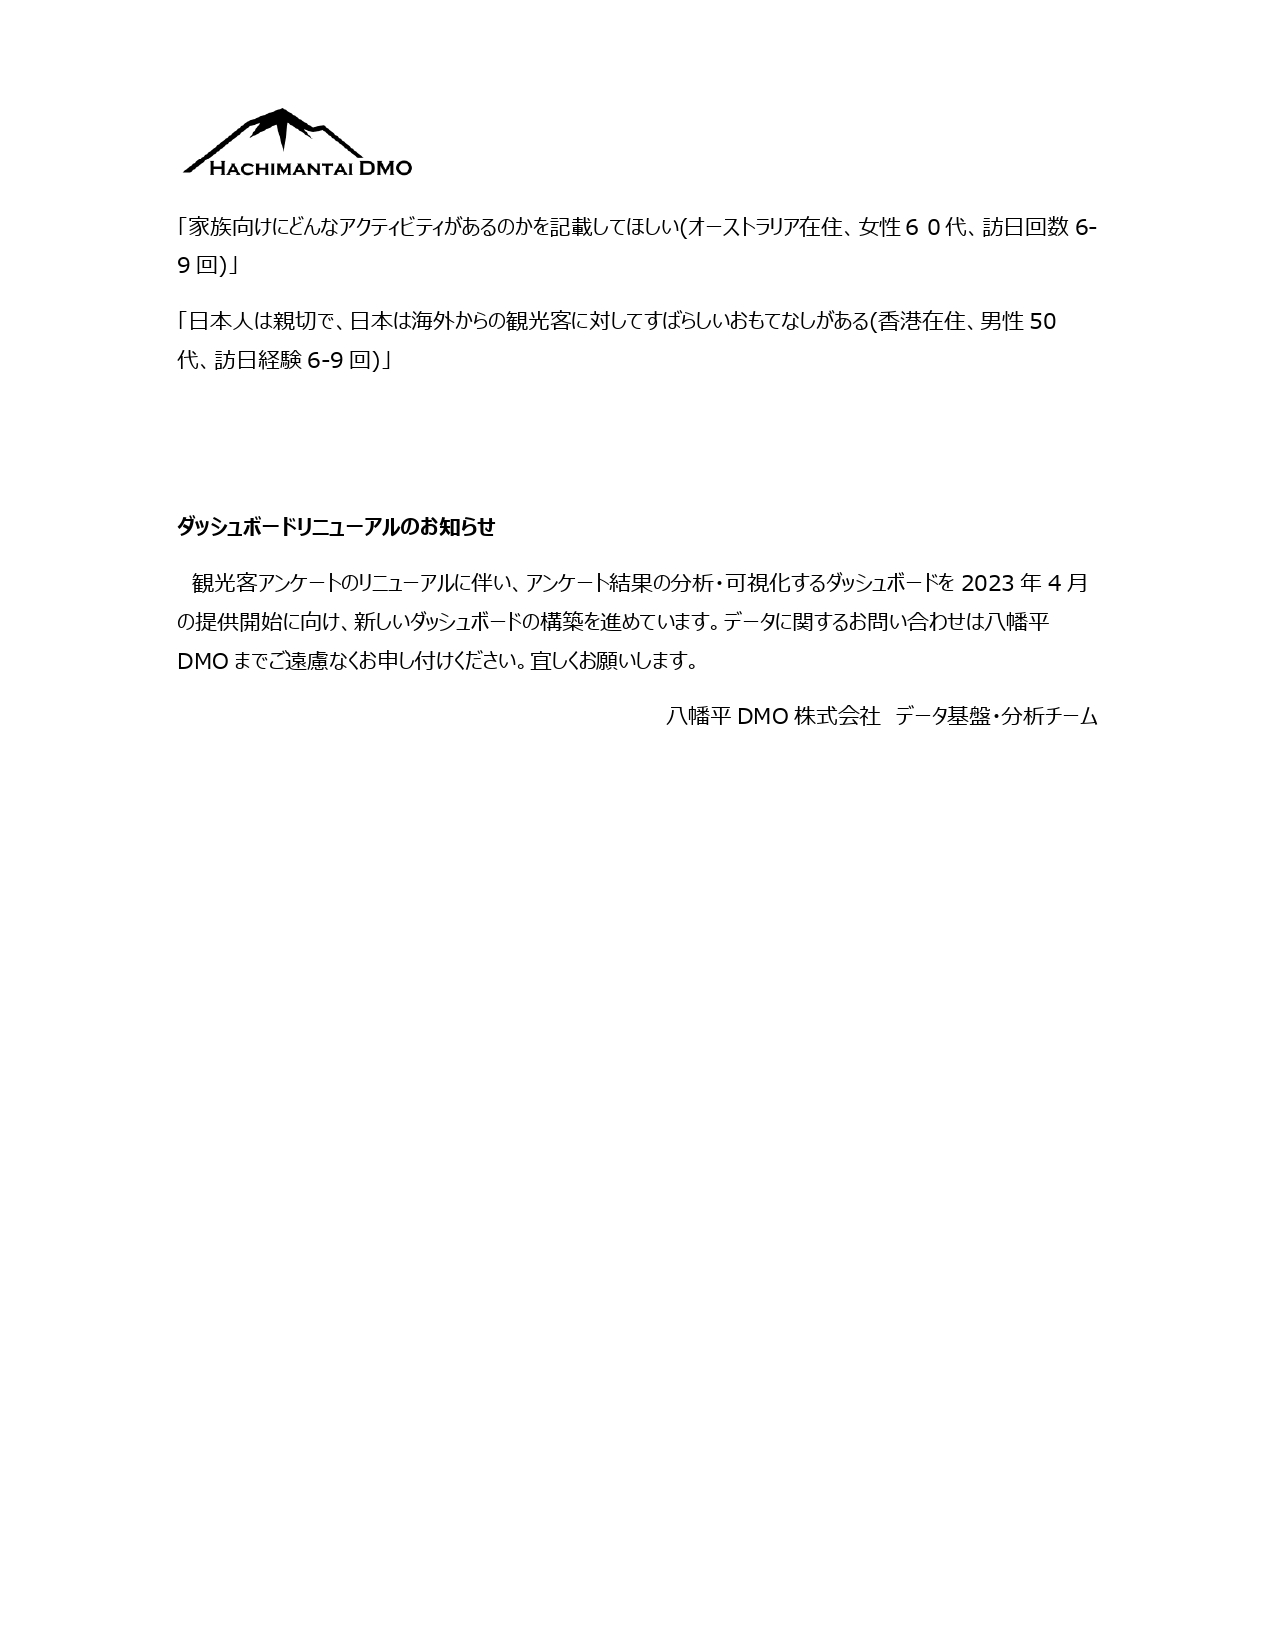 八幡平DMOマンスリーレポート 1月_page-0013